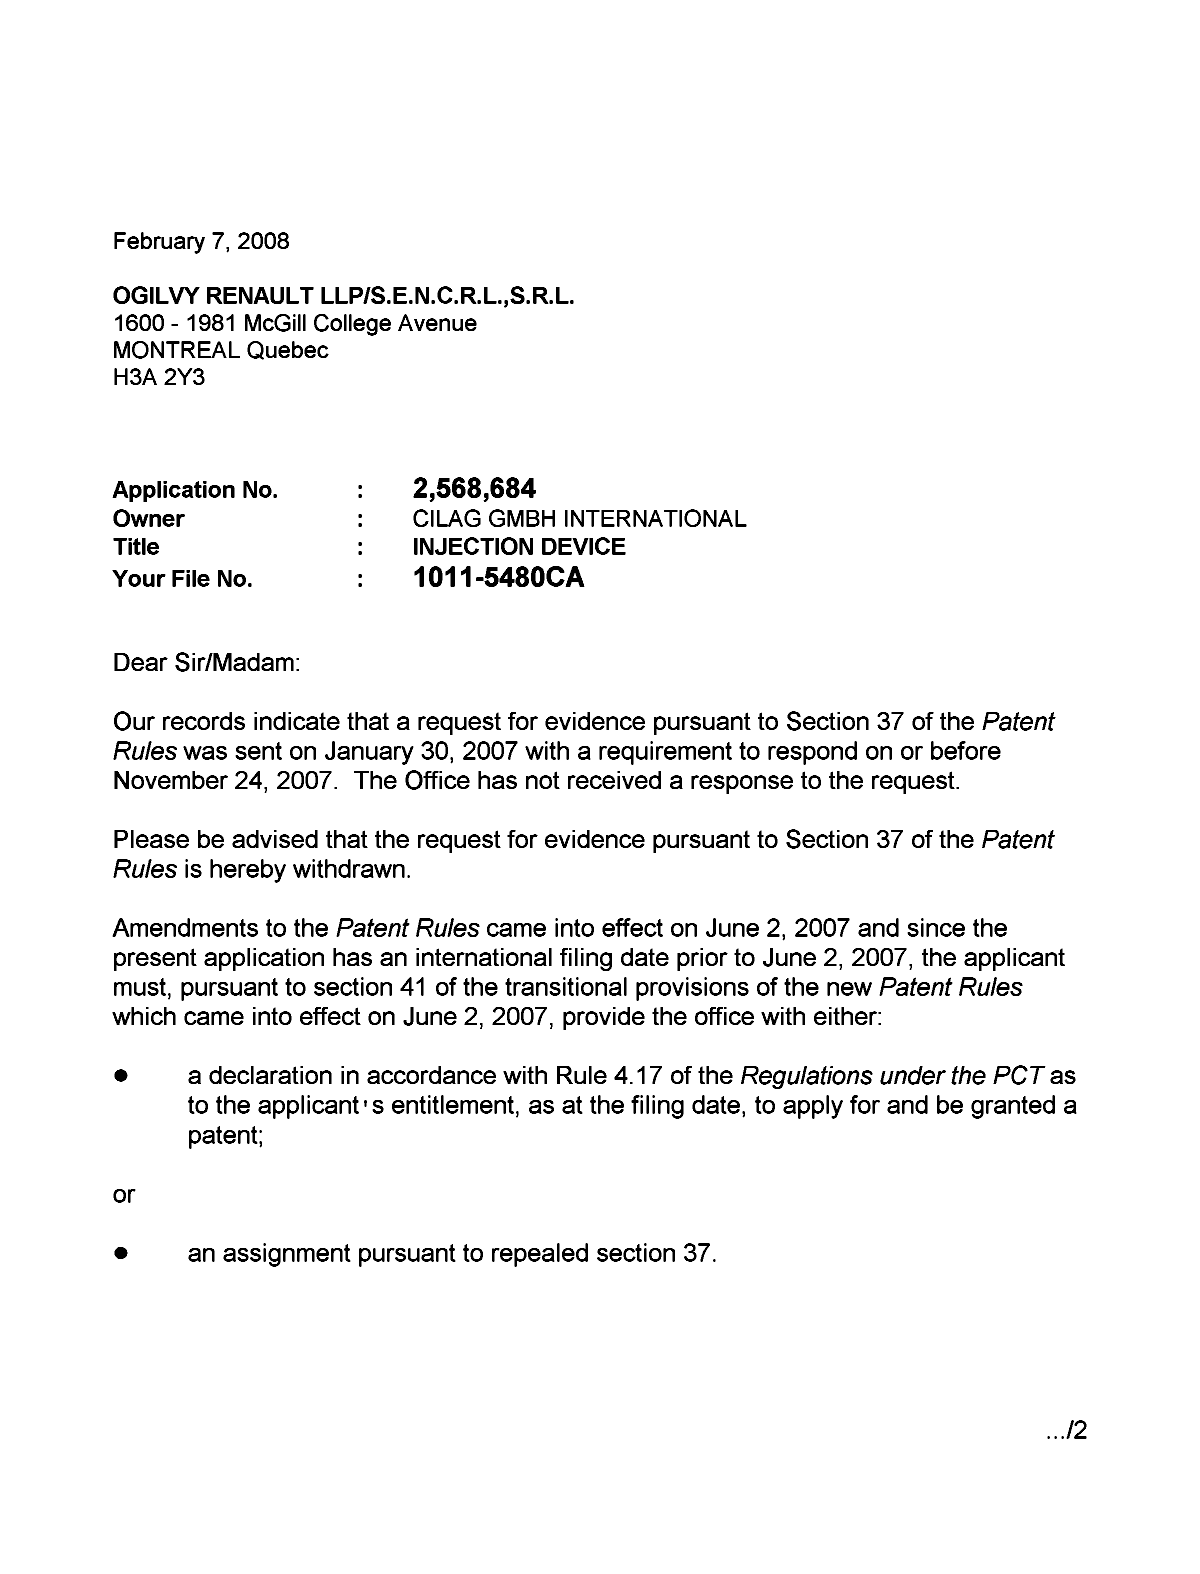 Document de brevet canadien 2568684. Correspondance 20080207. Image 1 de 2